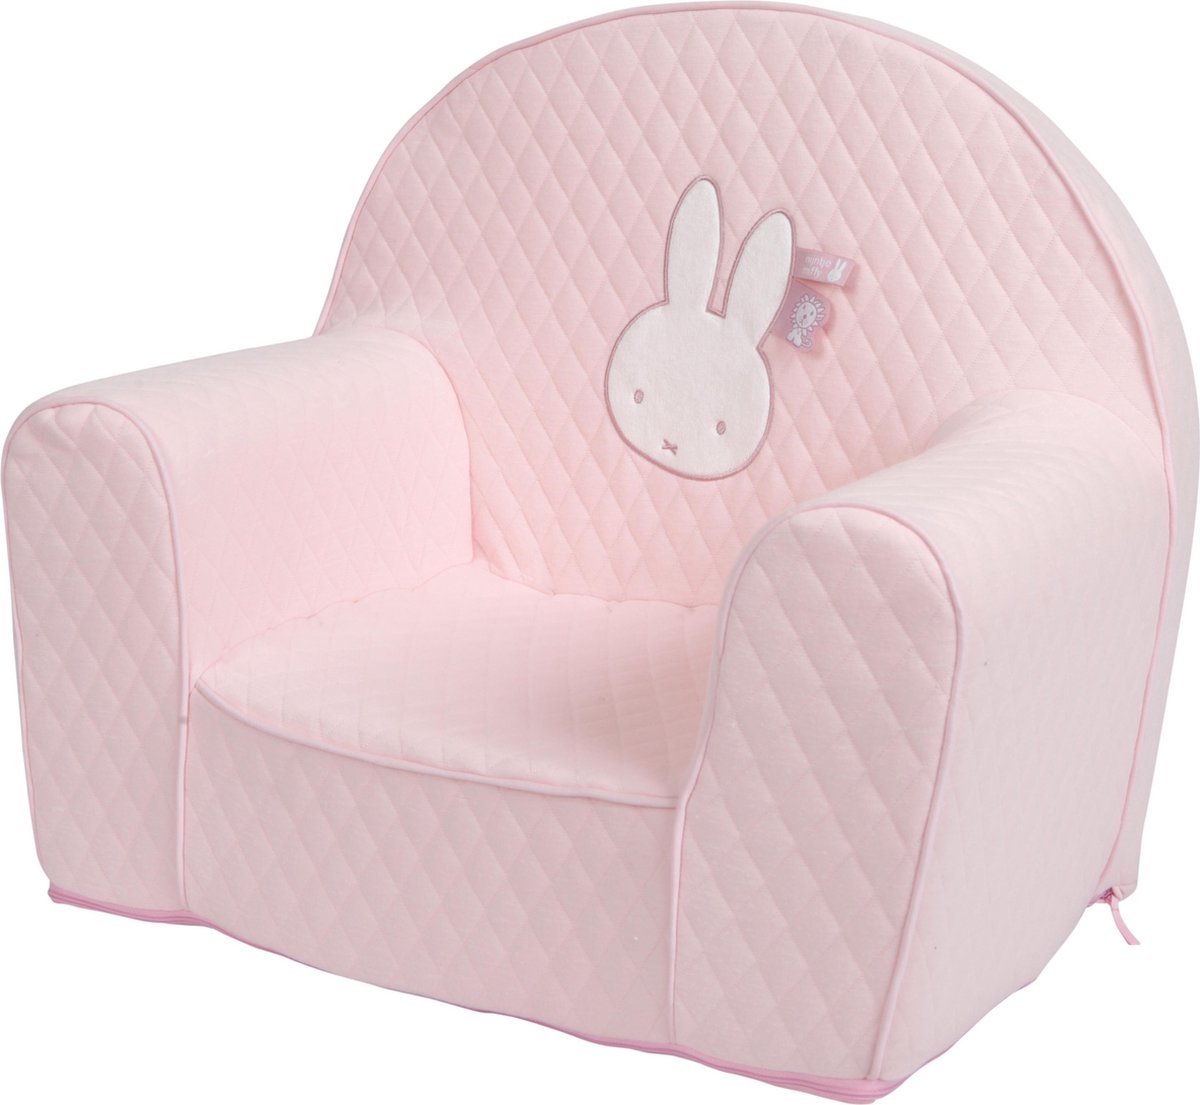 Tiamo fauteuil kinderstoeltje - Pink safari | bol.com